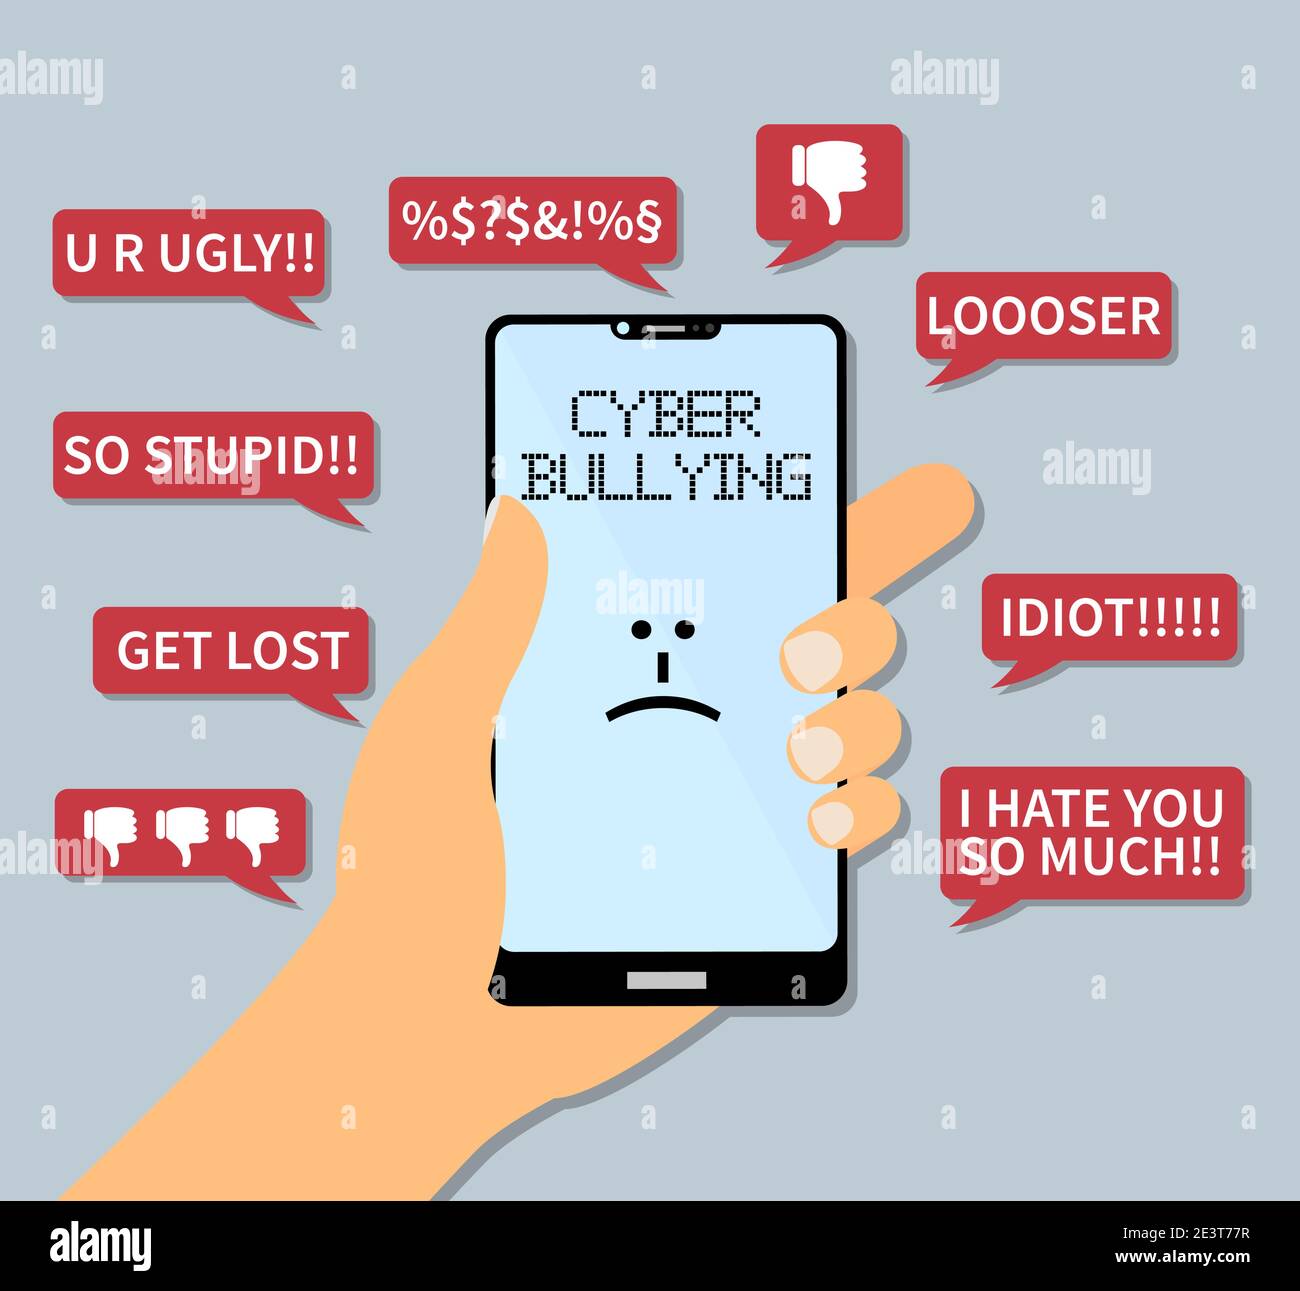 concept de cyber-intimidation, smartphone portable avec illustration vectorielle de messages texte insultants Illustration de Vecteur